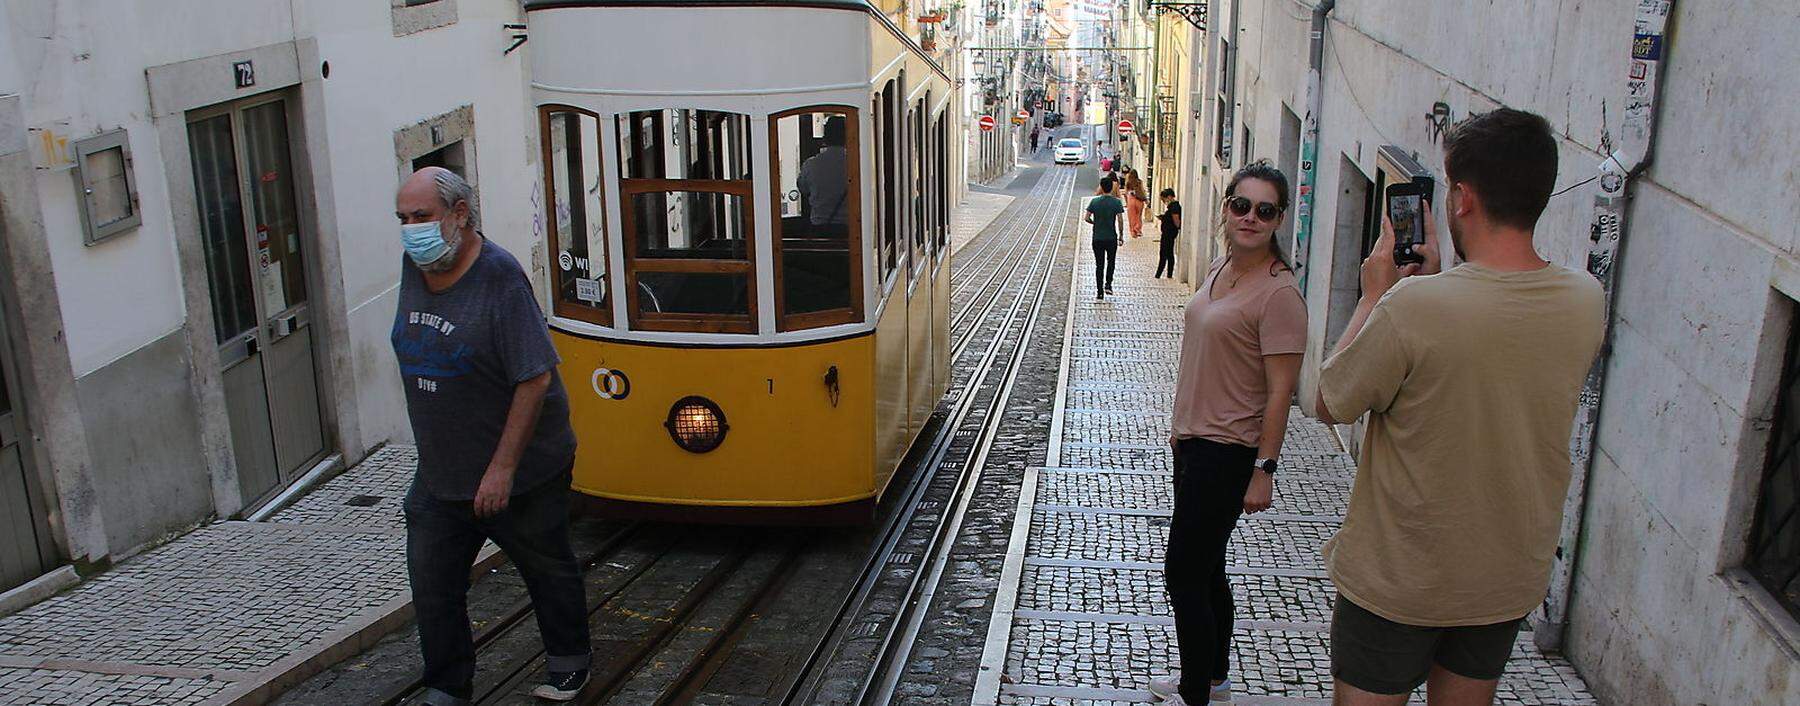 Wenige Touristen, halbleere Straßen: Sommer nach dem Lockdown in Lissabon.